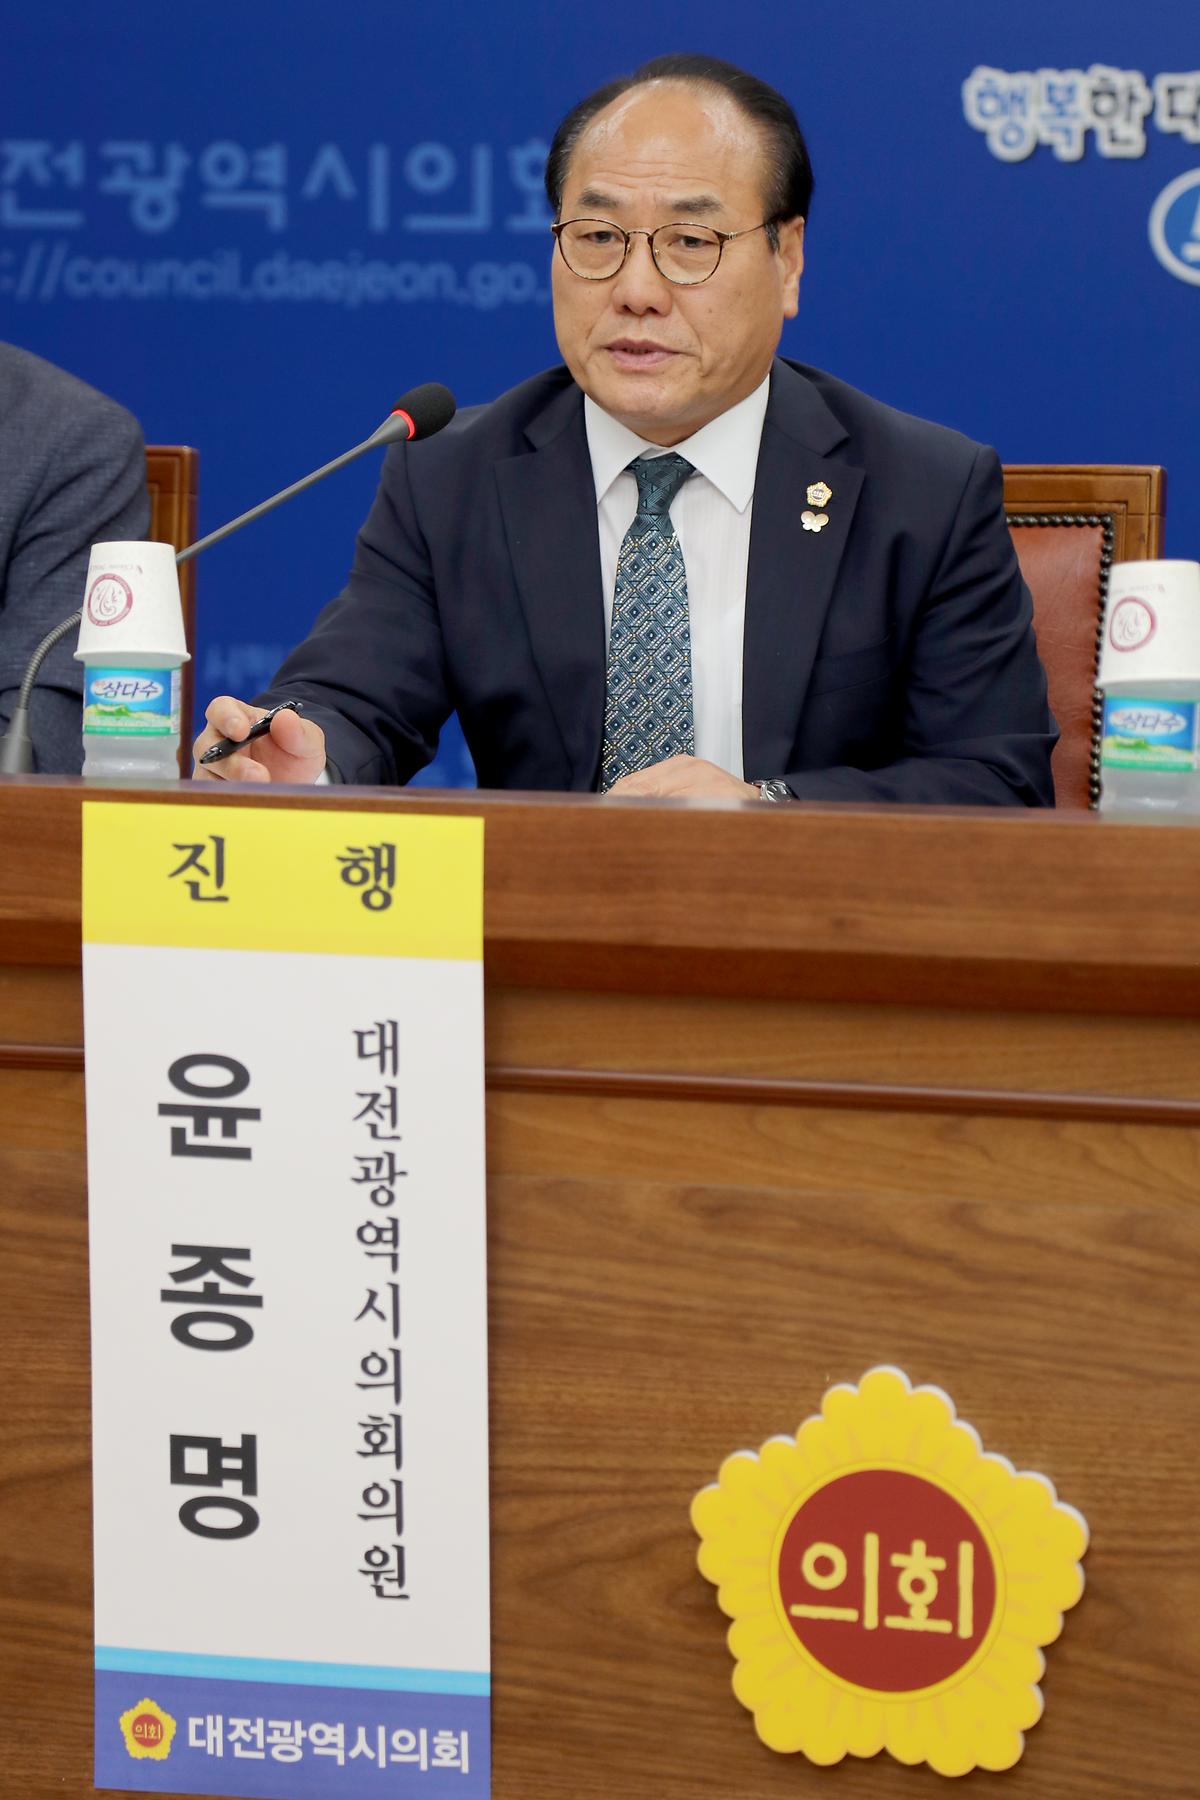 윤종명 의원. '지속가능한 노인일자리 창출 방안 모색 정책토론회' 개최 [ 2019-09-17 ]